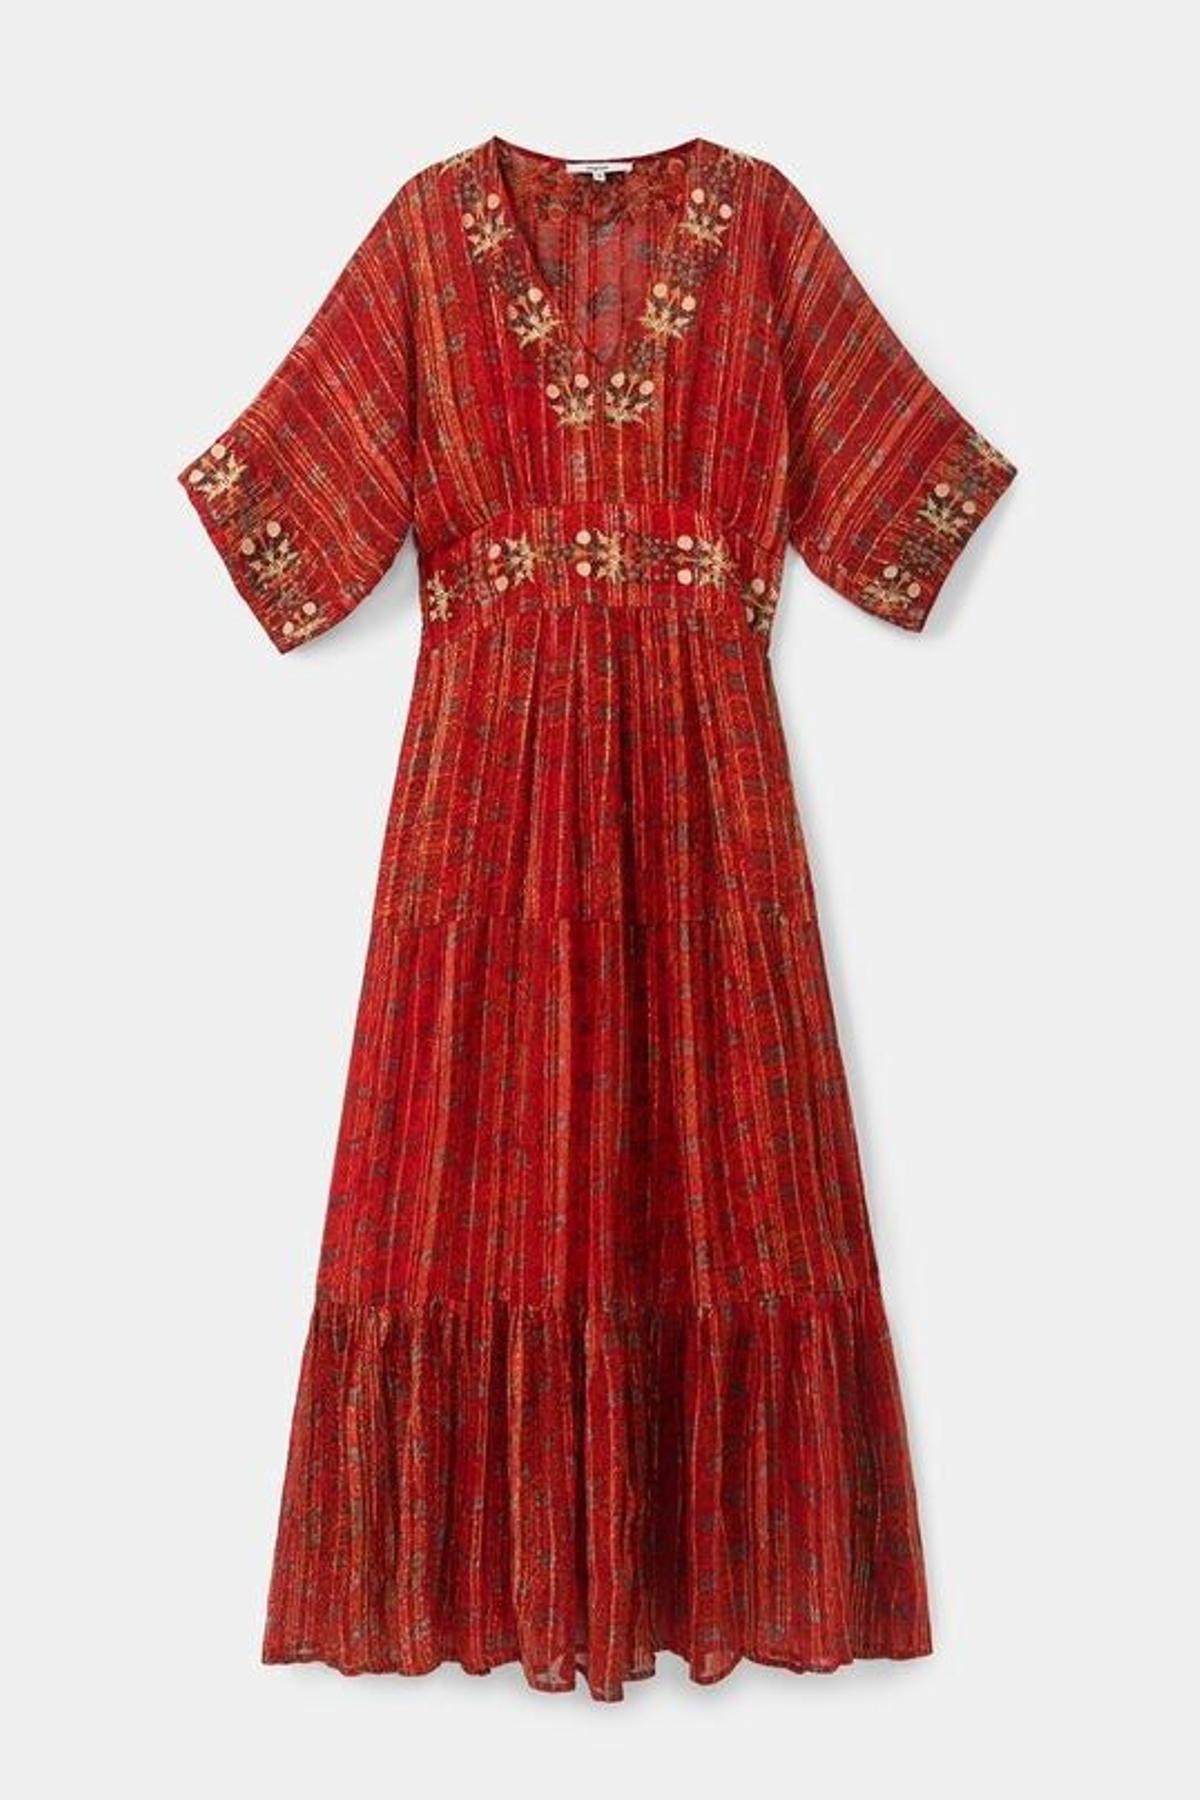 Vestido largo étnico lúrex, de Desigual (169,95 euros)